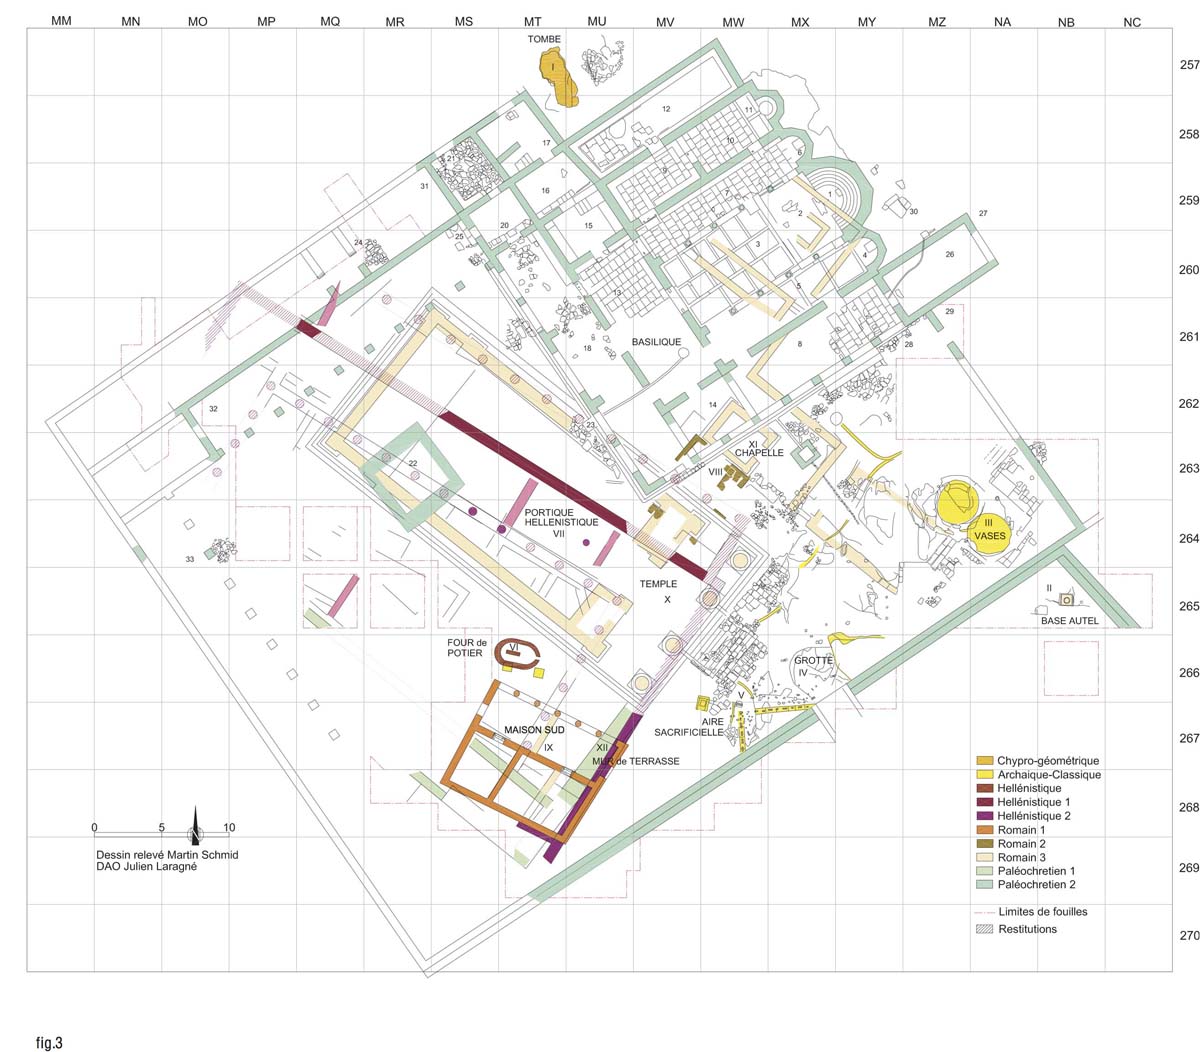 Ground plan of the sanctuary (M. Schmid, J. Laragné / Archives EFA, 42009)